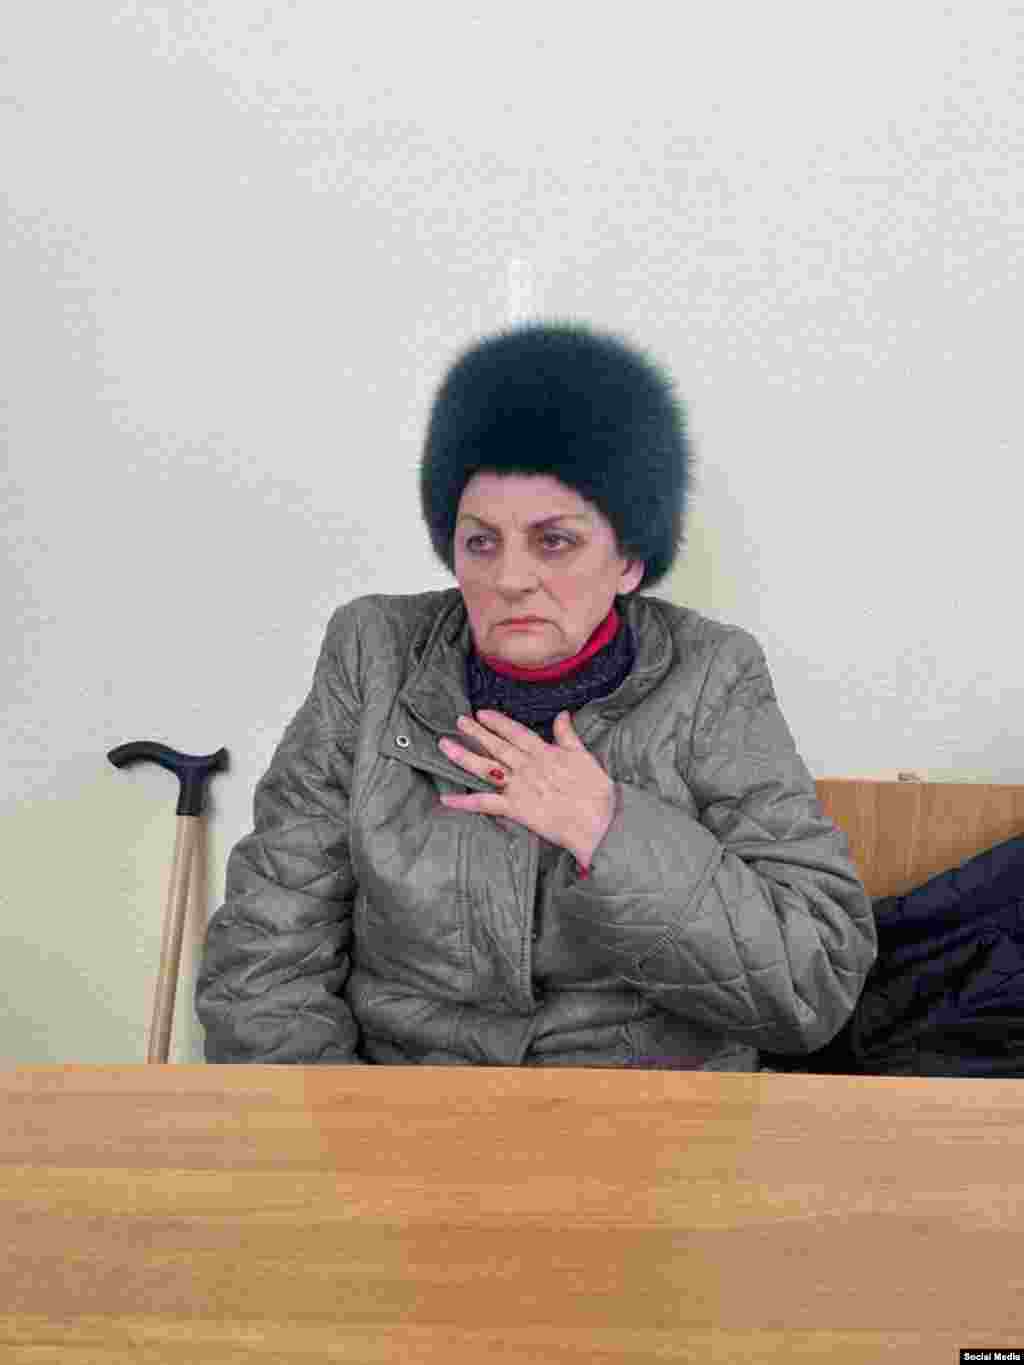 Jevgenija Maiboroda Ova 72-godišnjakinja, koji živi u predgrađu rudarskog grada u regiji Rostov, osuđena je na 5,5 godina zatvora zbog širenja &quot;lažnih&quot; informacija o ruskoj vojsci. Jedna od njezinih &quot;uvredljivih&quot; objava na ruskoj društvenoj mreži&nbsp;VKontakte&nbsp;je ona o desecima hiljada civilnih žrtava tokom ruskog preuzimanja ukrajinskog grada Mariupolja. Život ove penzionerke prije odlaska u zatvor obilježila je tragedija. Izgubila je sina u prometnoj nesreći 1997., a suprug joj je umro od bolesti 2011. U invaziji na Ukrajinu, njezina rodica, koja je živjela preko granice u Ukrajini, ranjena je u ruskom napadu na Dnjipro.